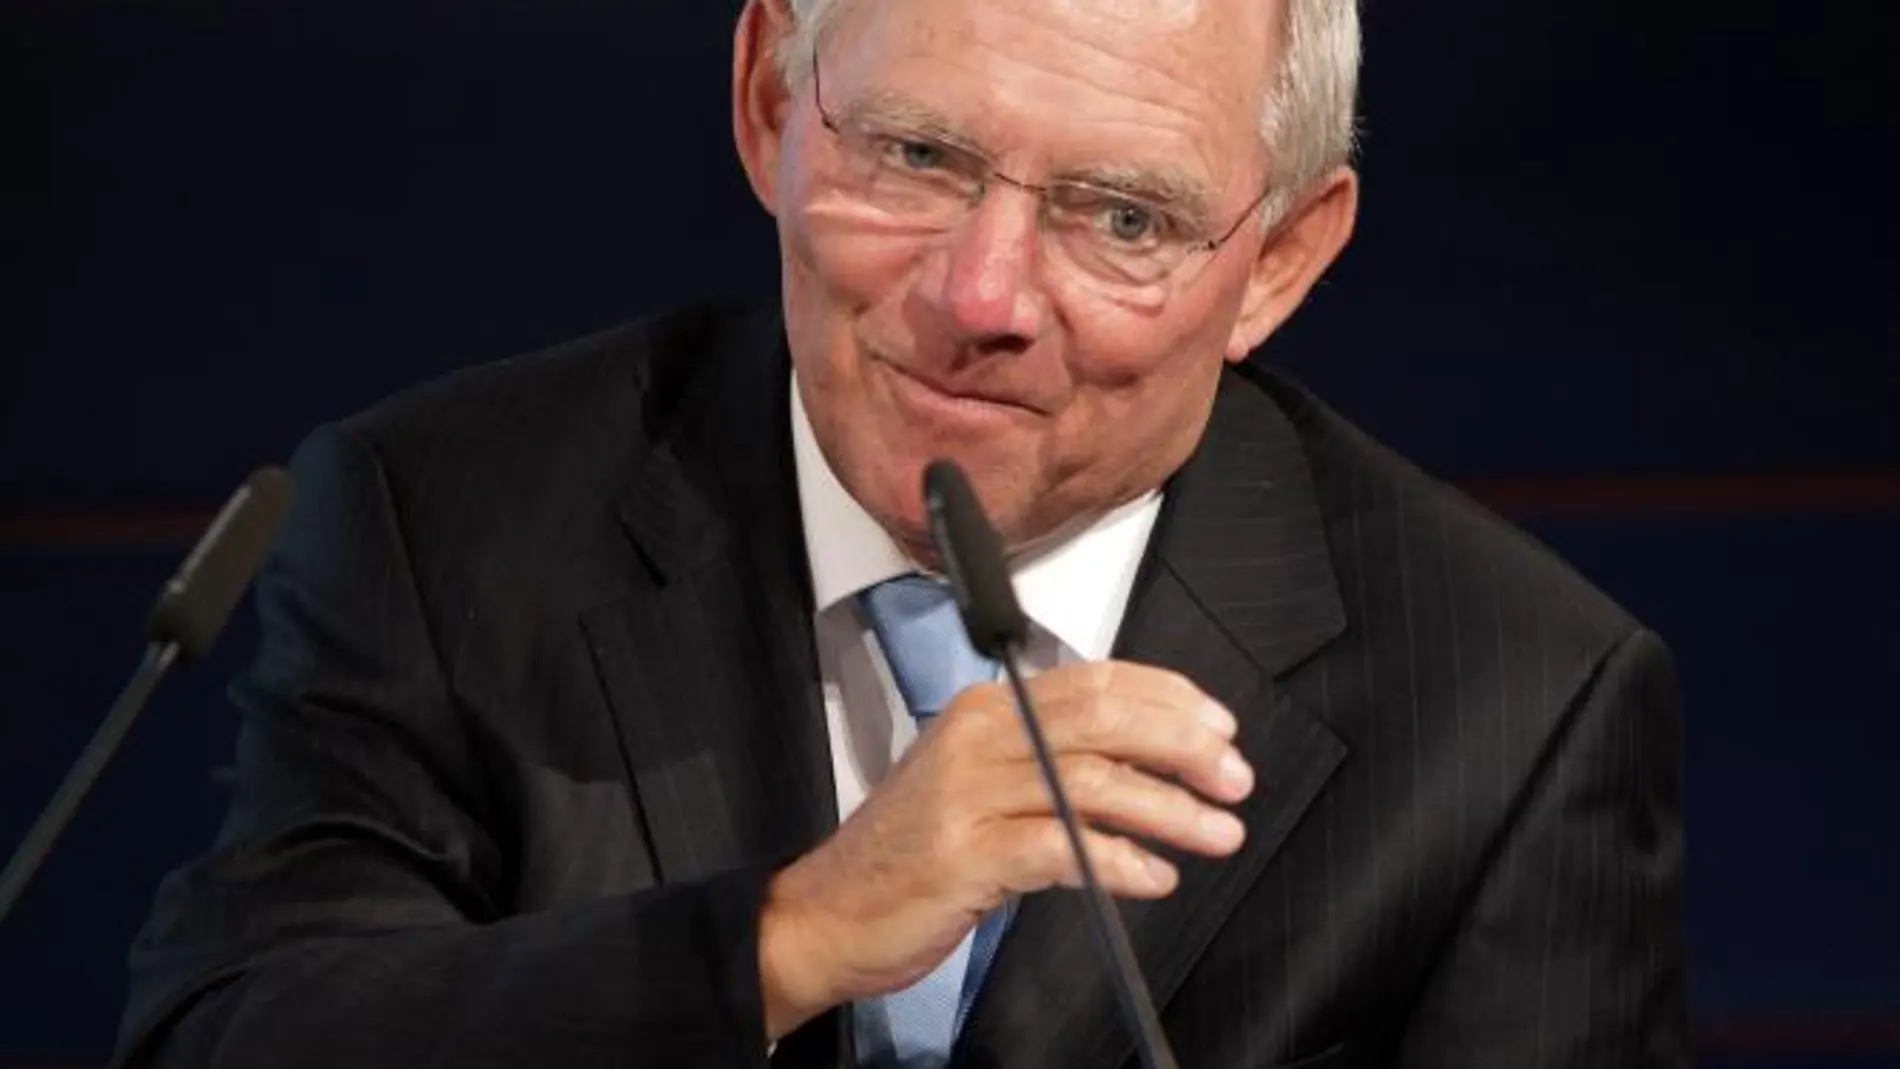 El ministro de Finanzas alemán, Wolfgang Schäuble